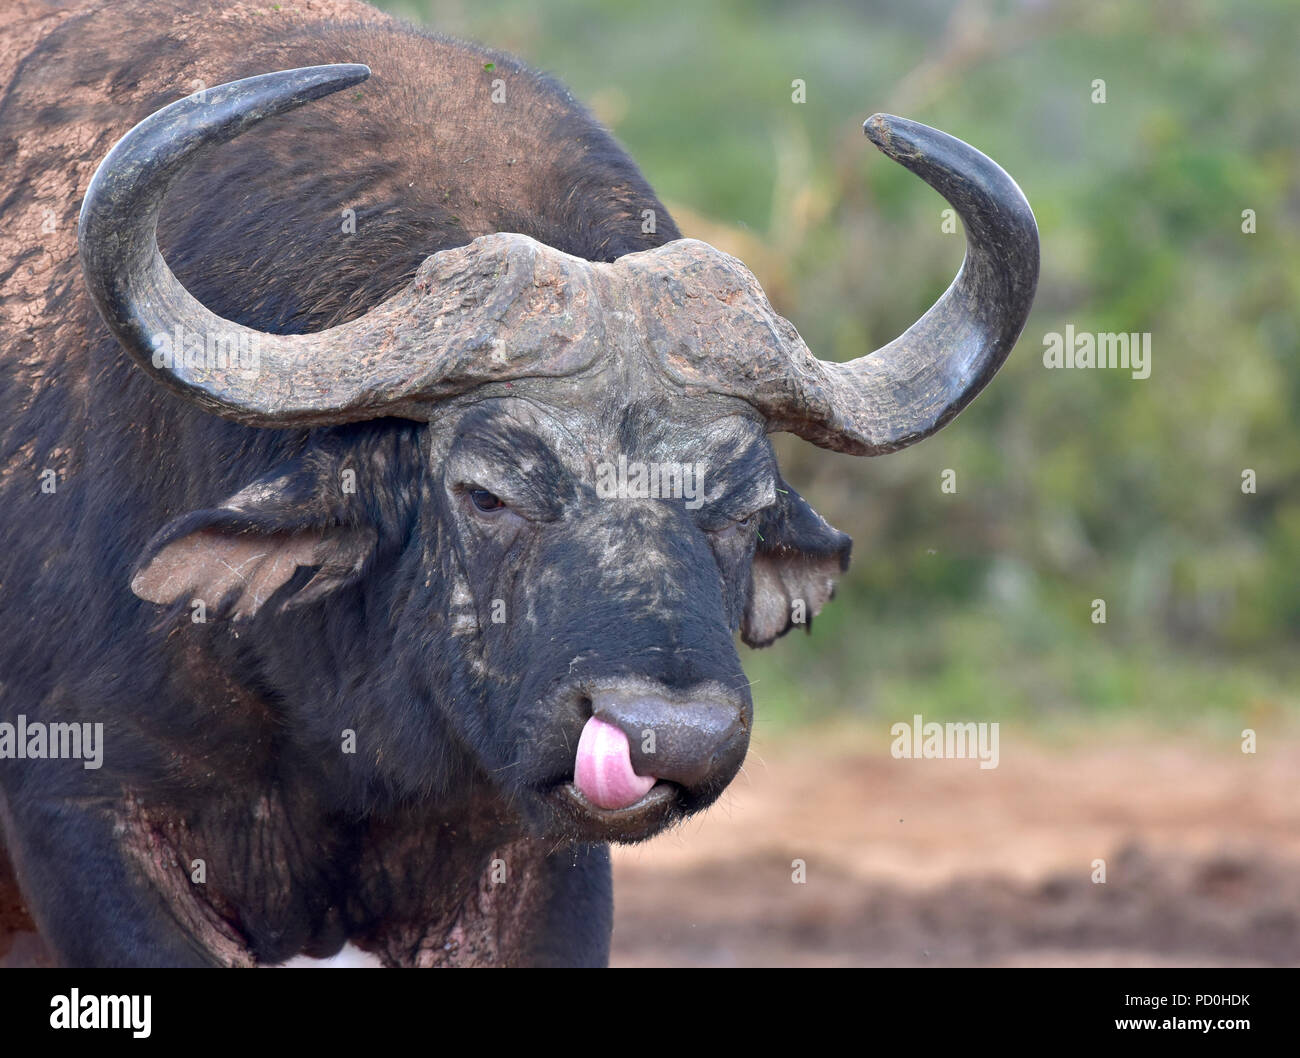 Sudáfrica, un fantástico destino turístico para disfrutar de tercer y primer mundo juntos. Buffalo bull lamer la nariz limpia con su lengua. Foto de stock